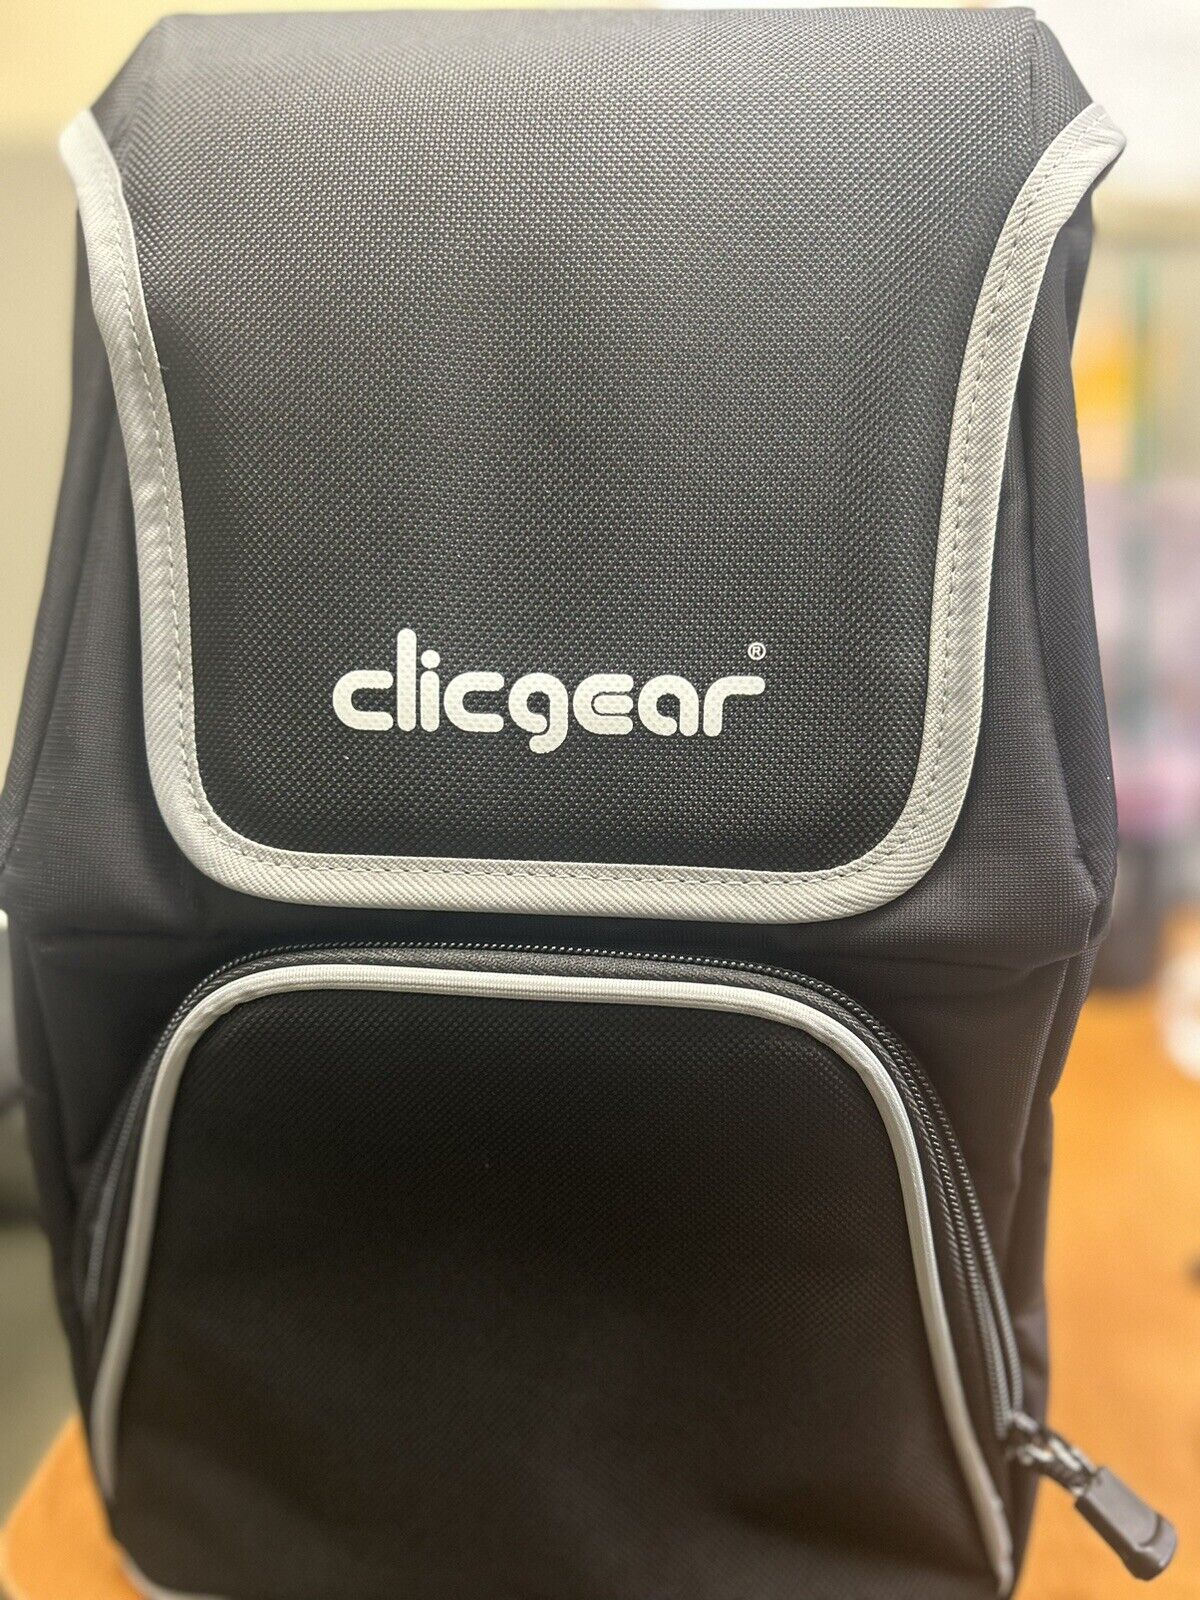 clicgear cooler bag